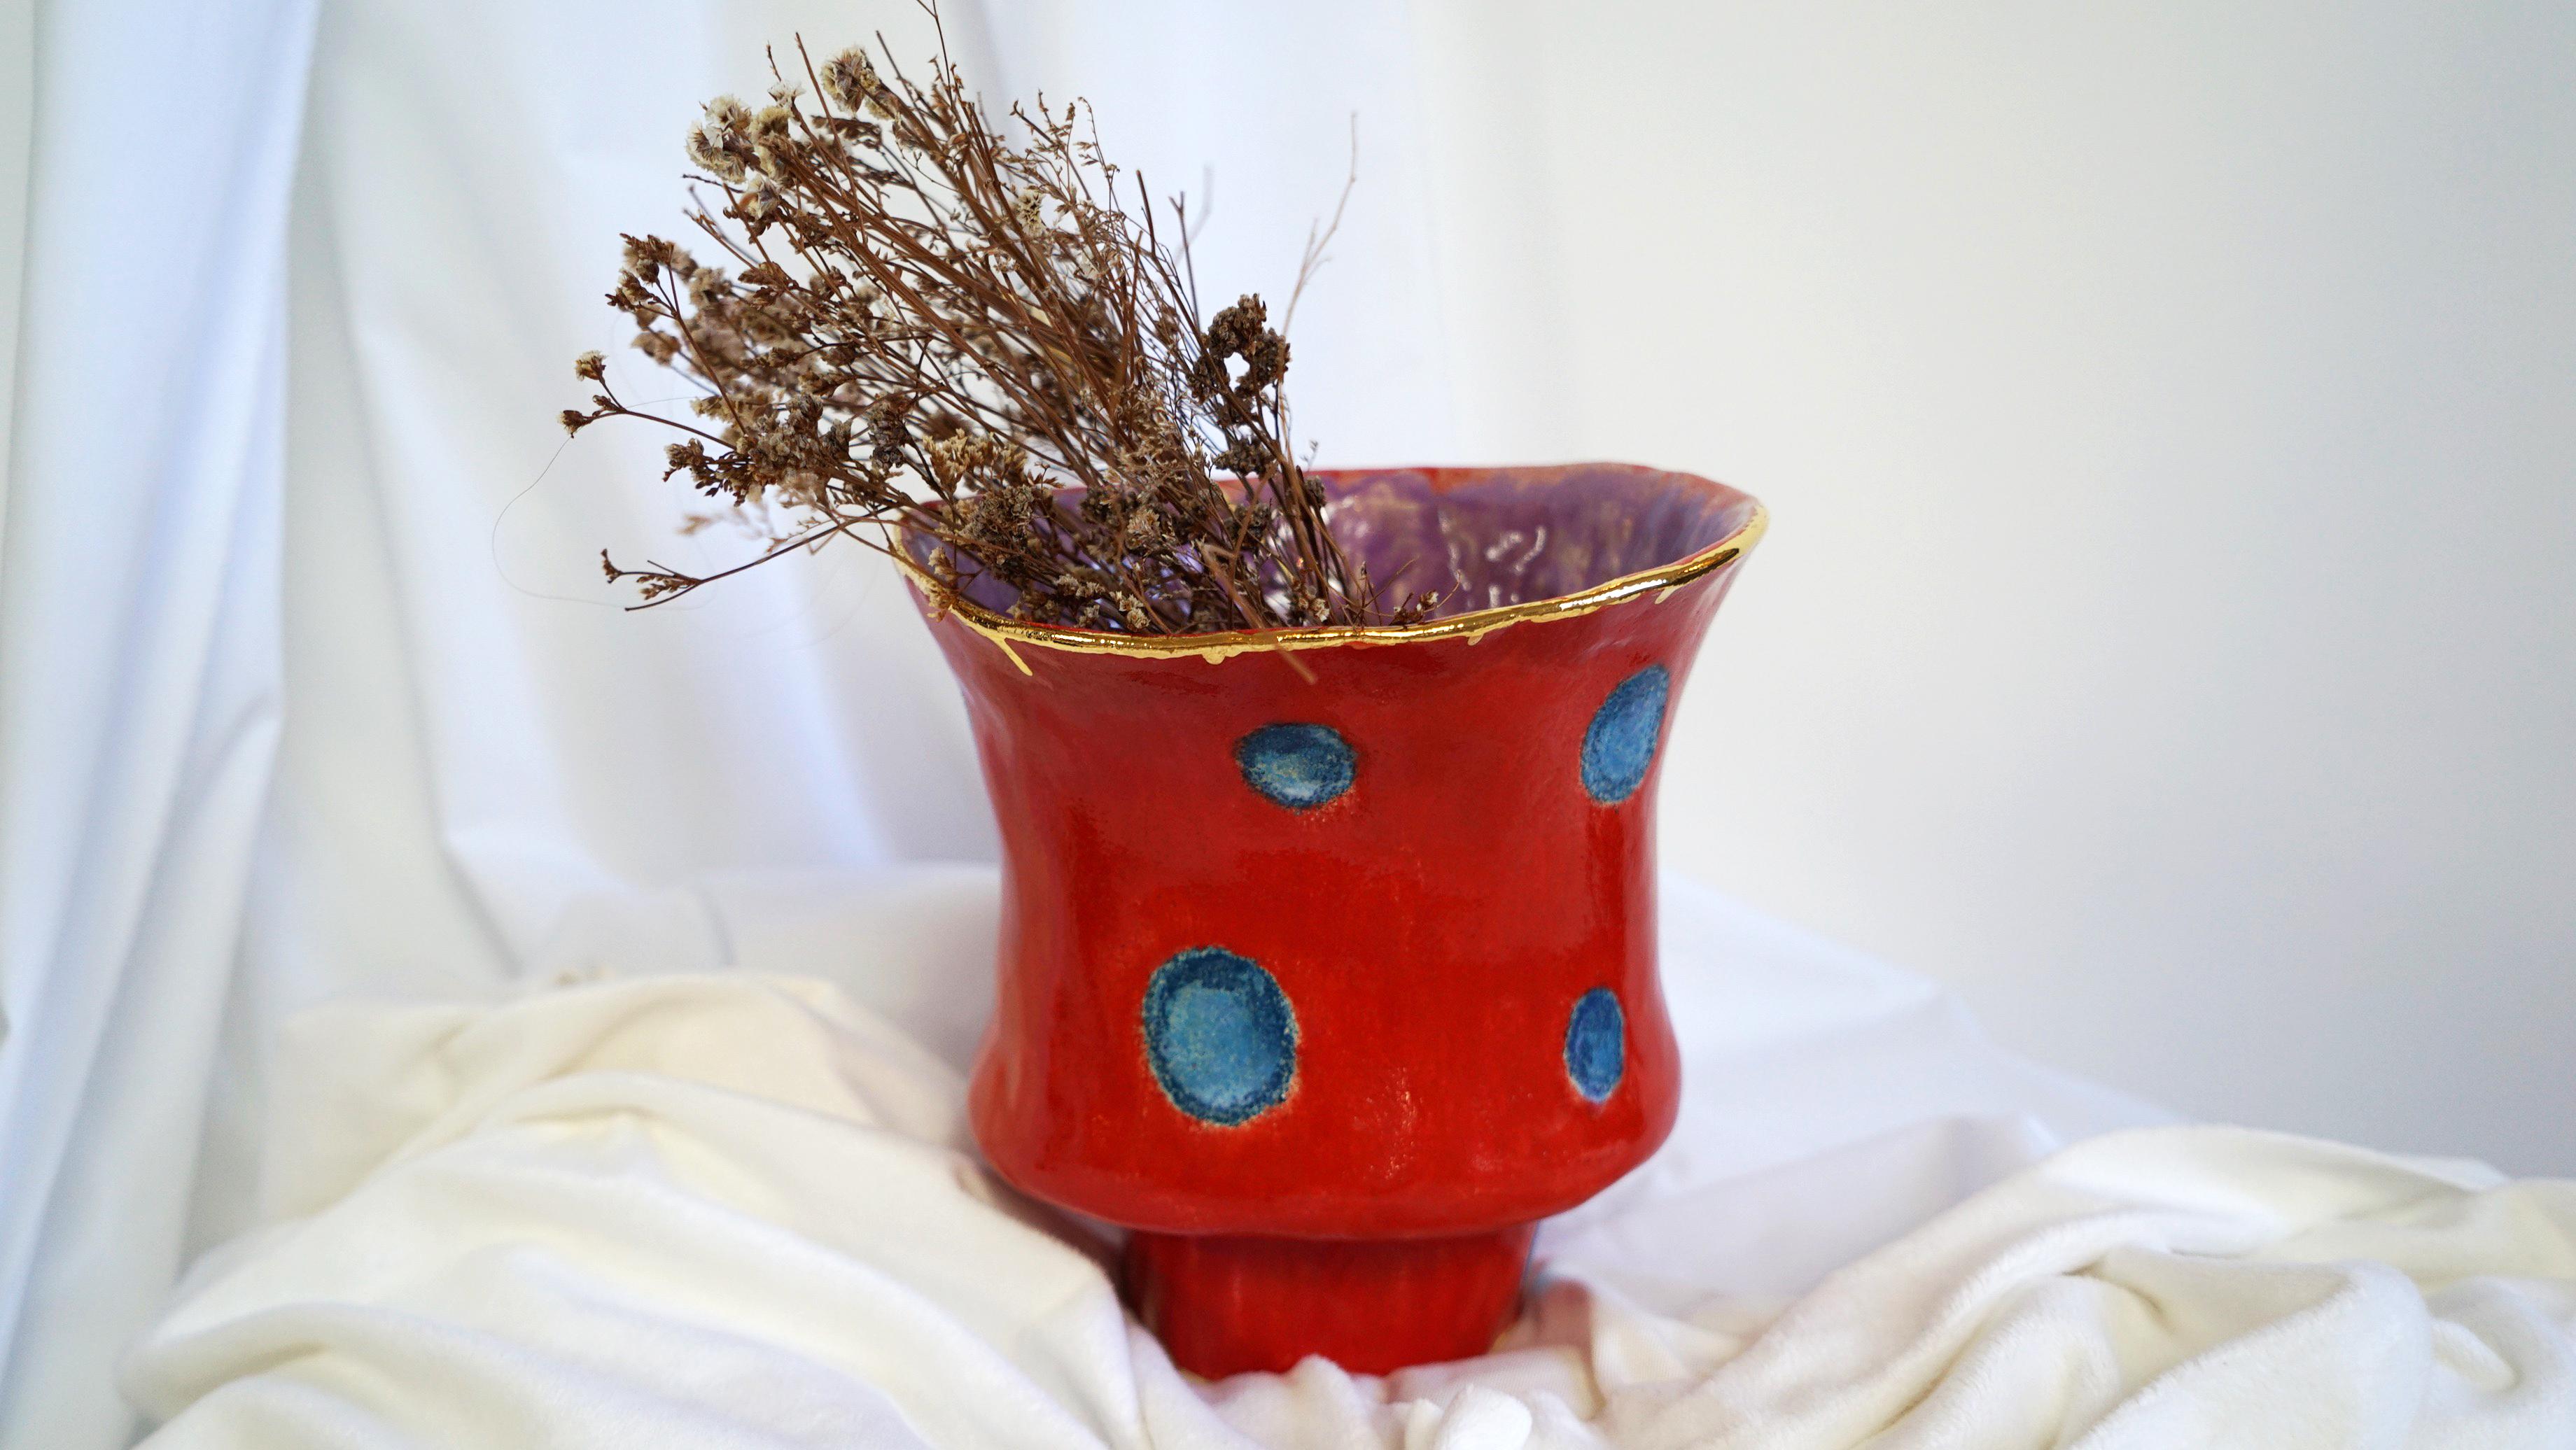 Nummerierte Vase Olé aus der Kollektion Olé, eine Hommage an die Flamenco-Kultur.
Von Hand gefertigt und glasiert, ist dies ein einzigartiges Stück. 
MATERIALIEN: Keramik, Steinzeug, Glasur, Goldglanz.
Farbe: Rote Glasur und blaue skizzenhafte